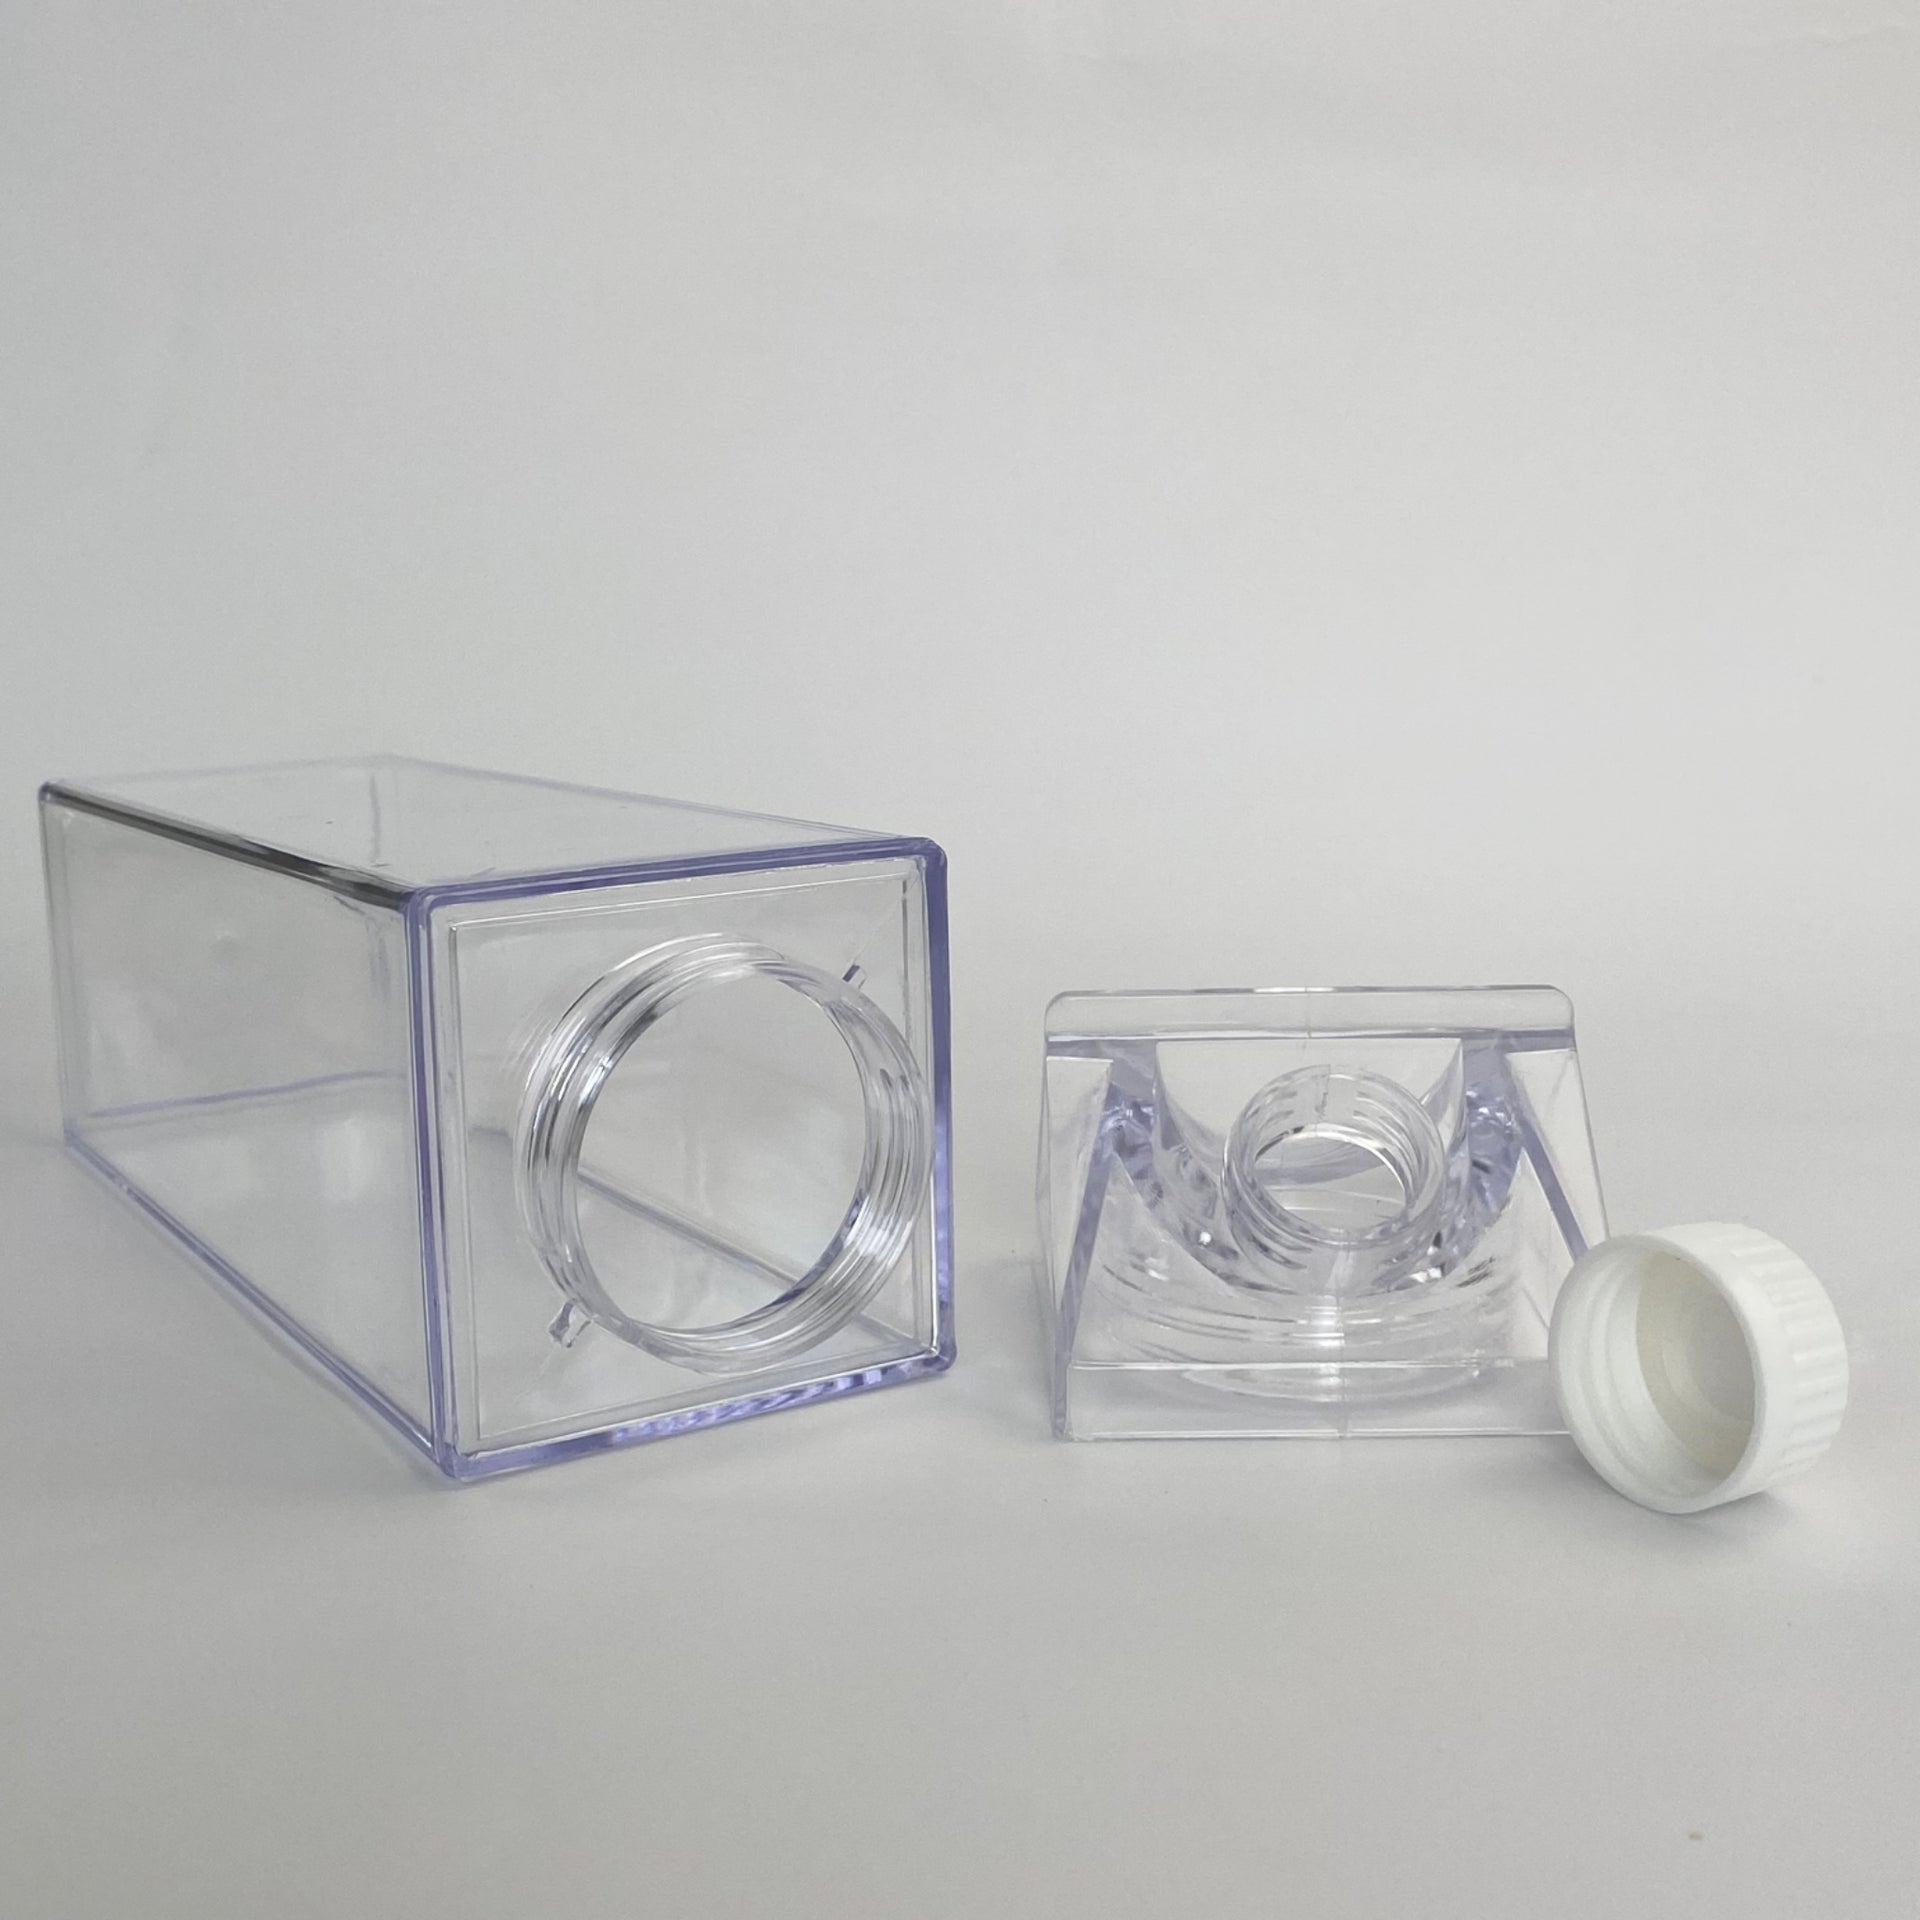 Bouteille d'eau en carton de lait transparent 2 pièces, bouteille